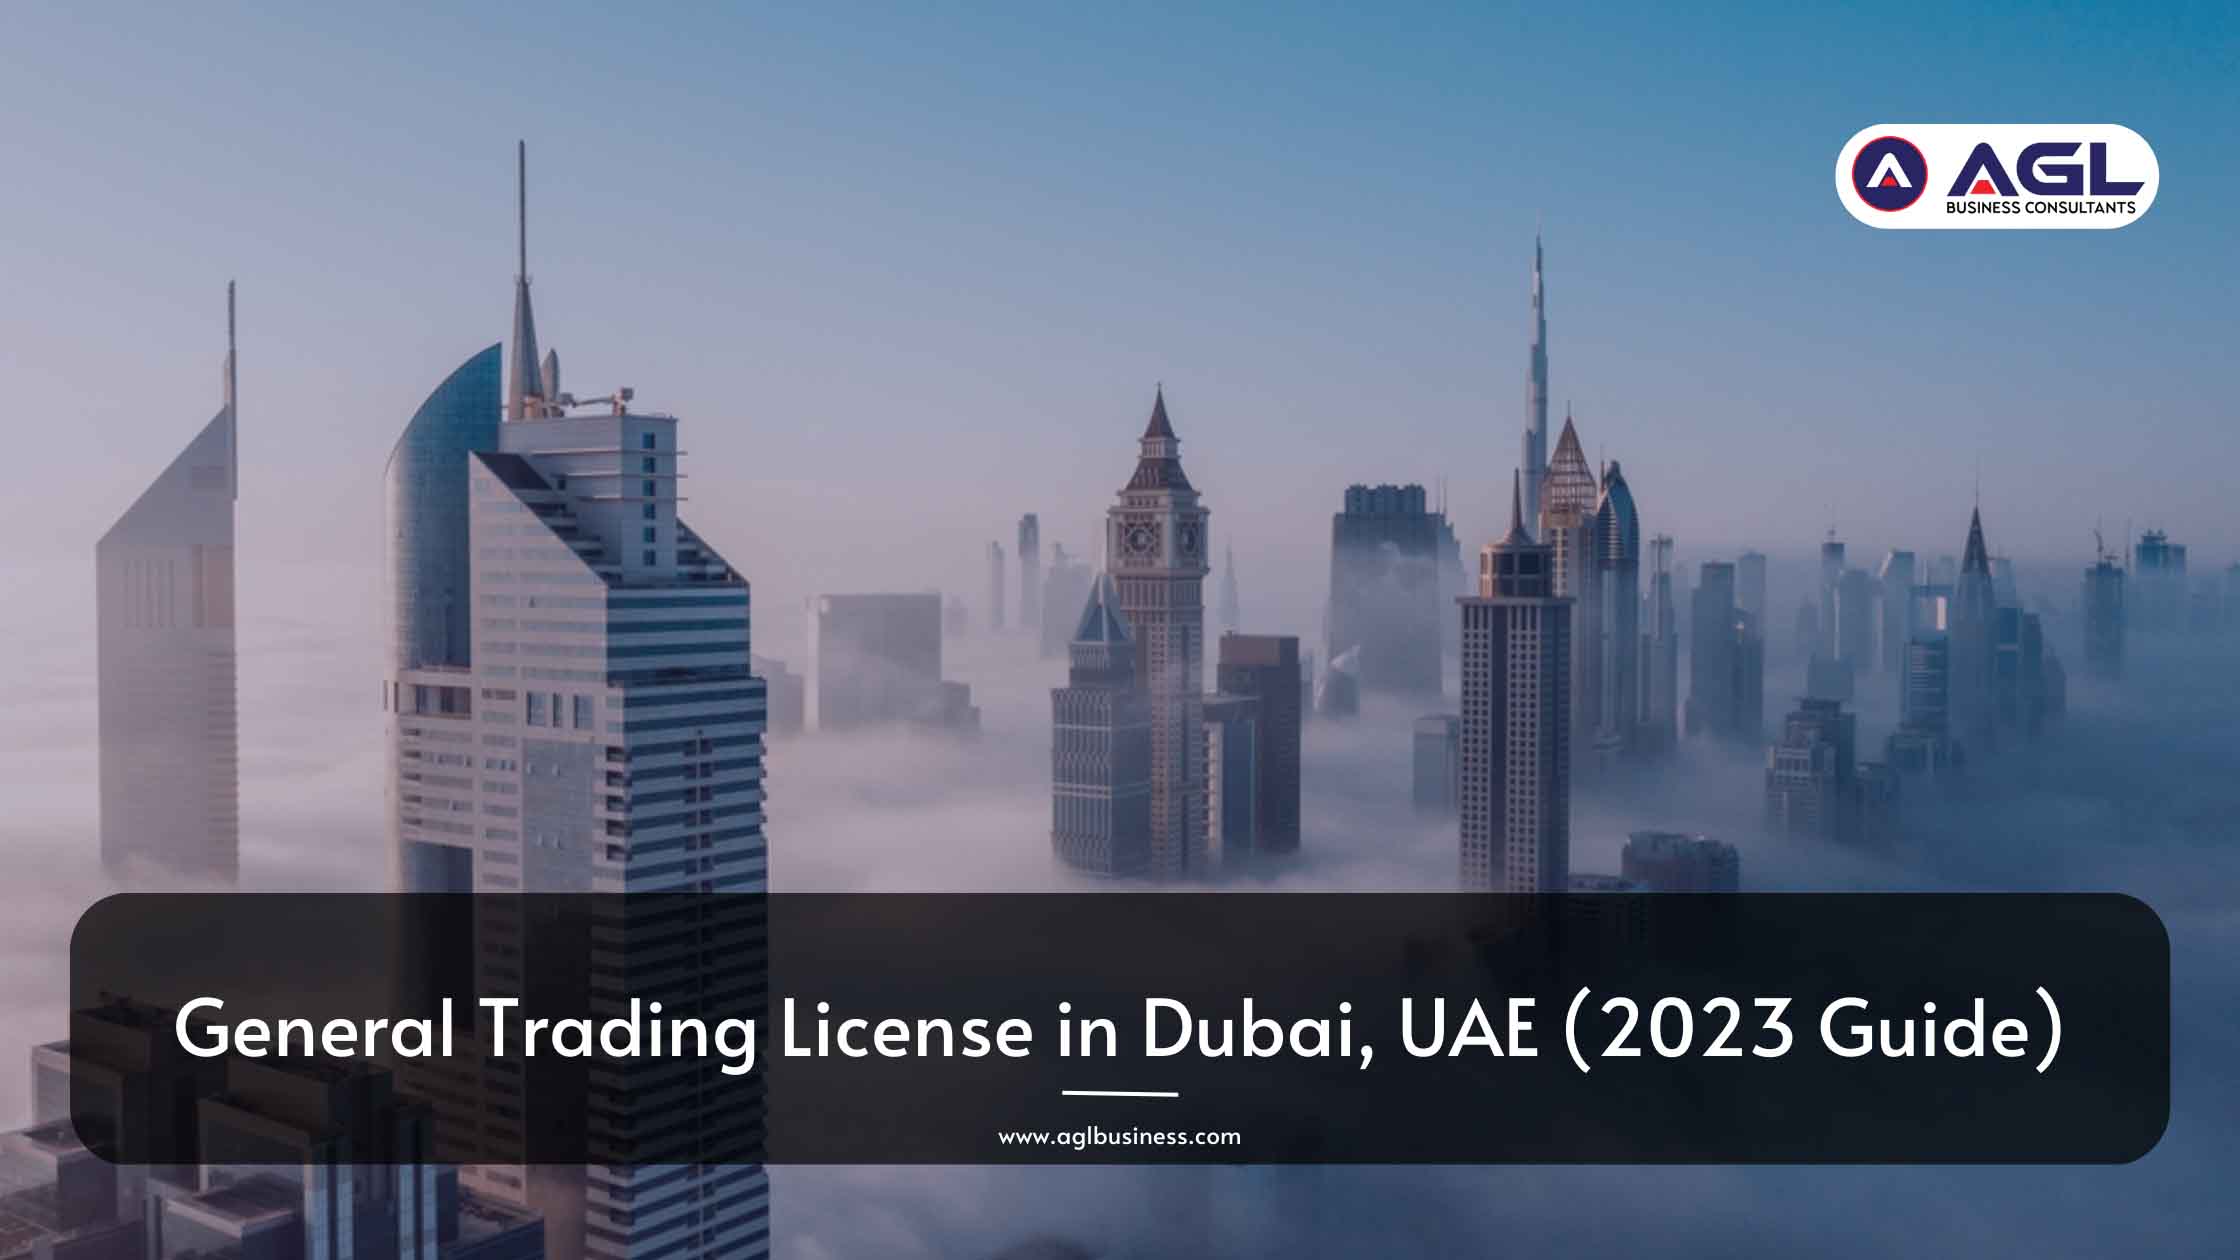 阿联酋迪拜一般贸易许可证（2023 年指南）